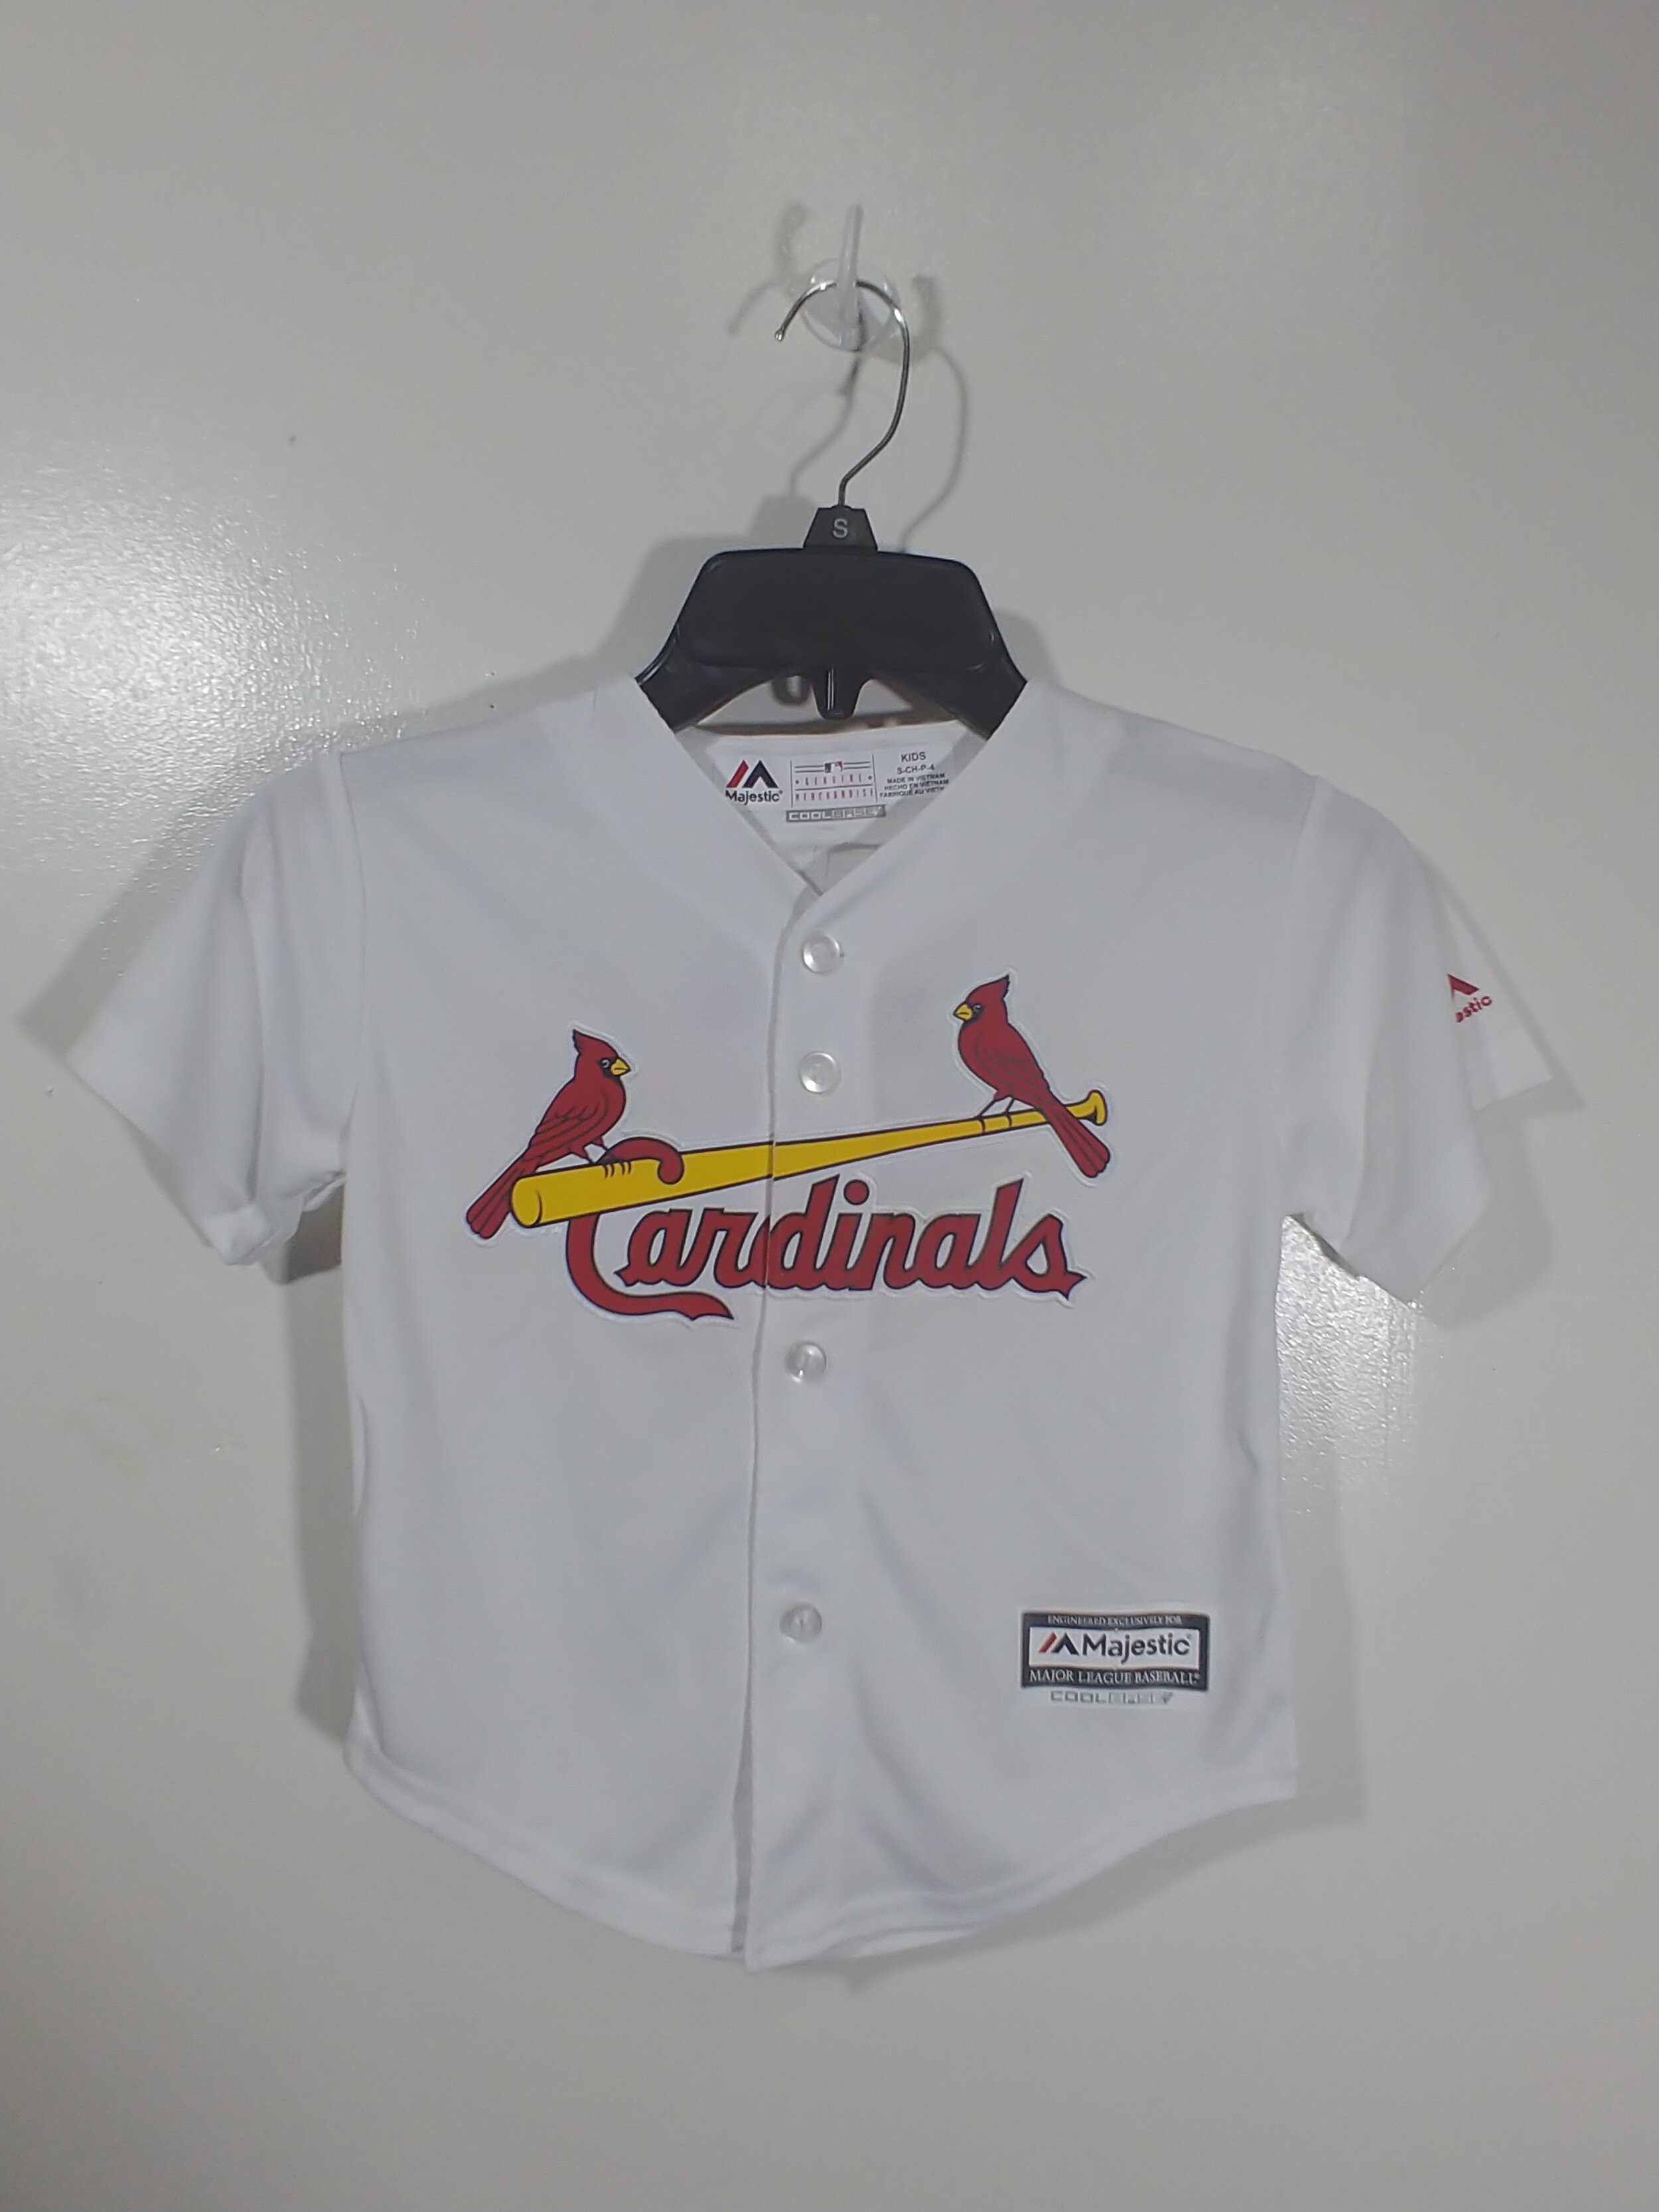 Kids St Louis Cardinals Shirt 